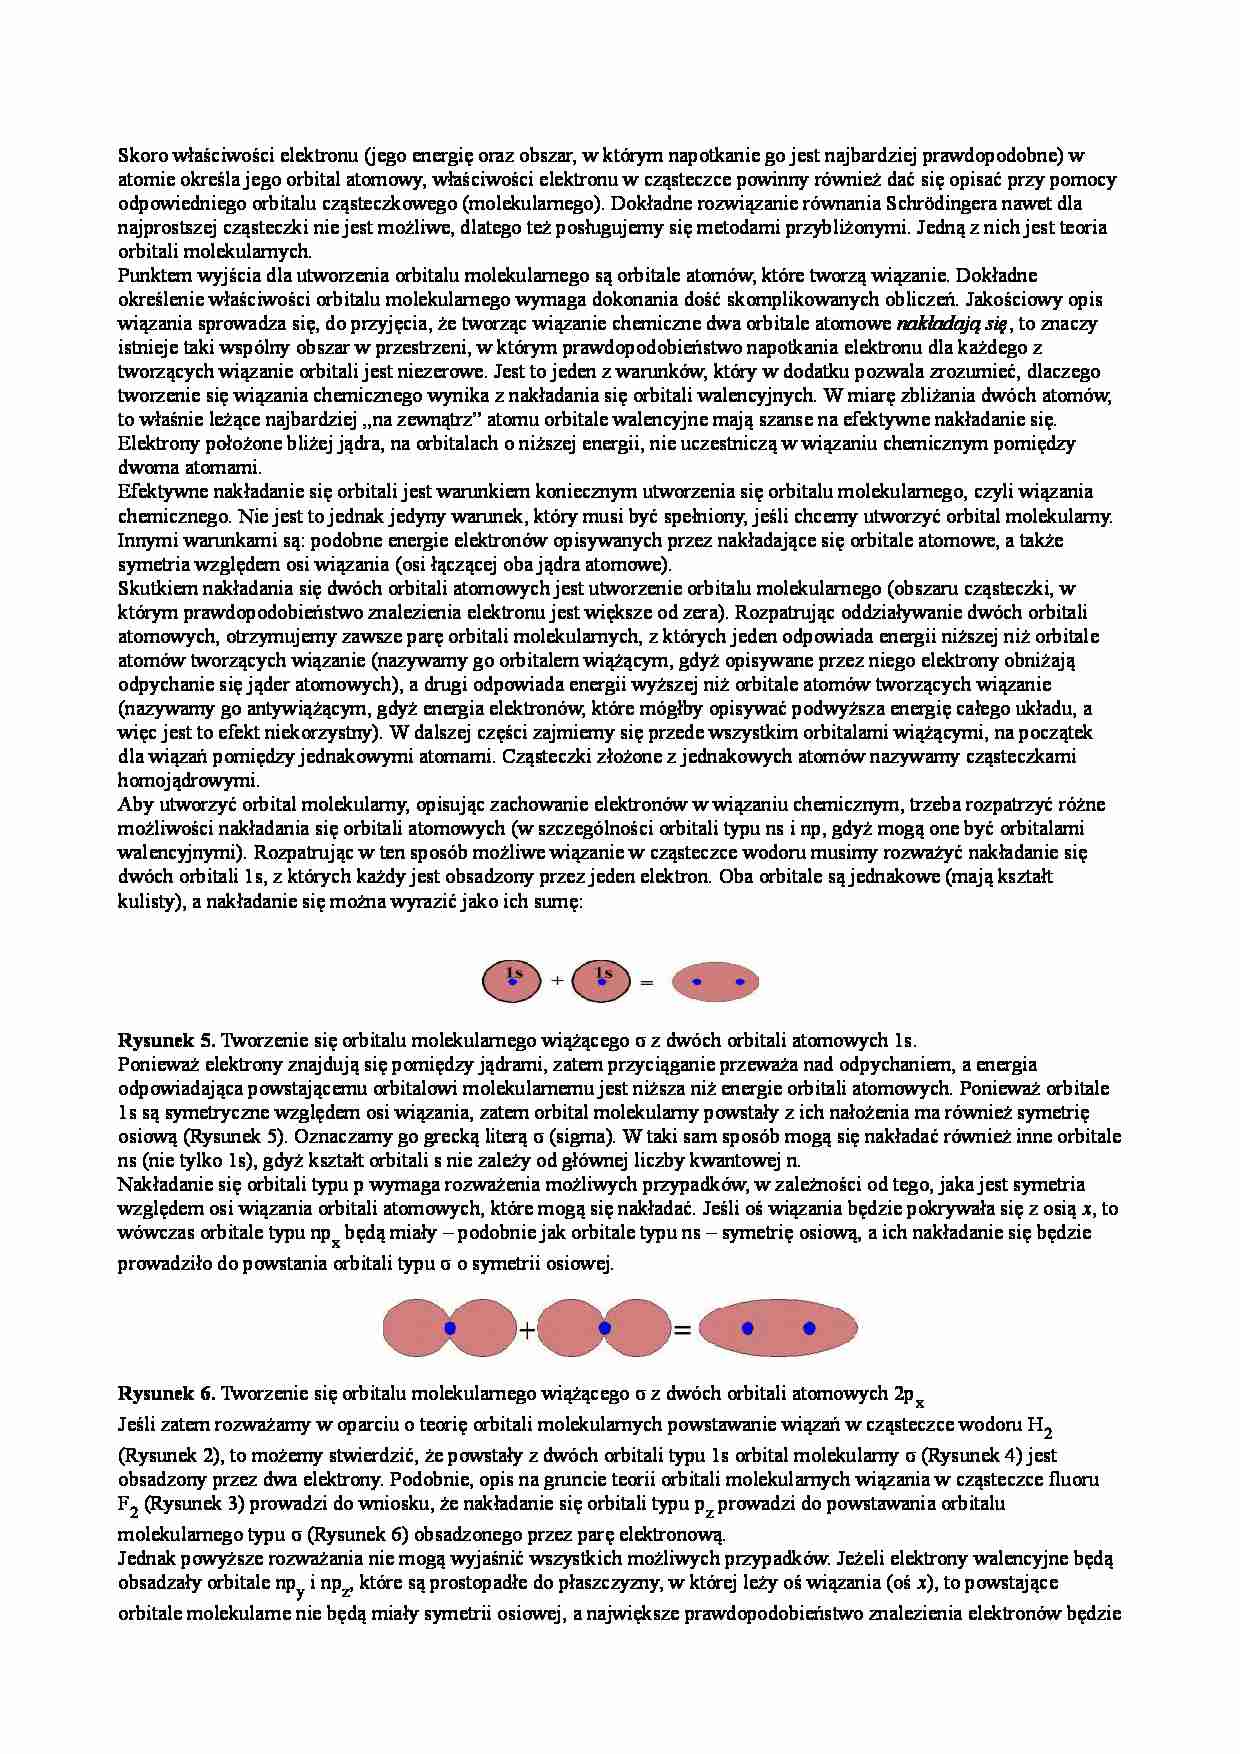 Orbitale molekularne - omówienie zagadnienia - strona 1